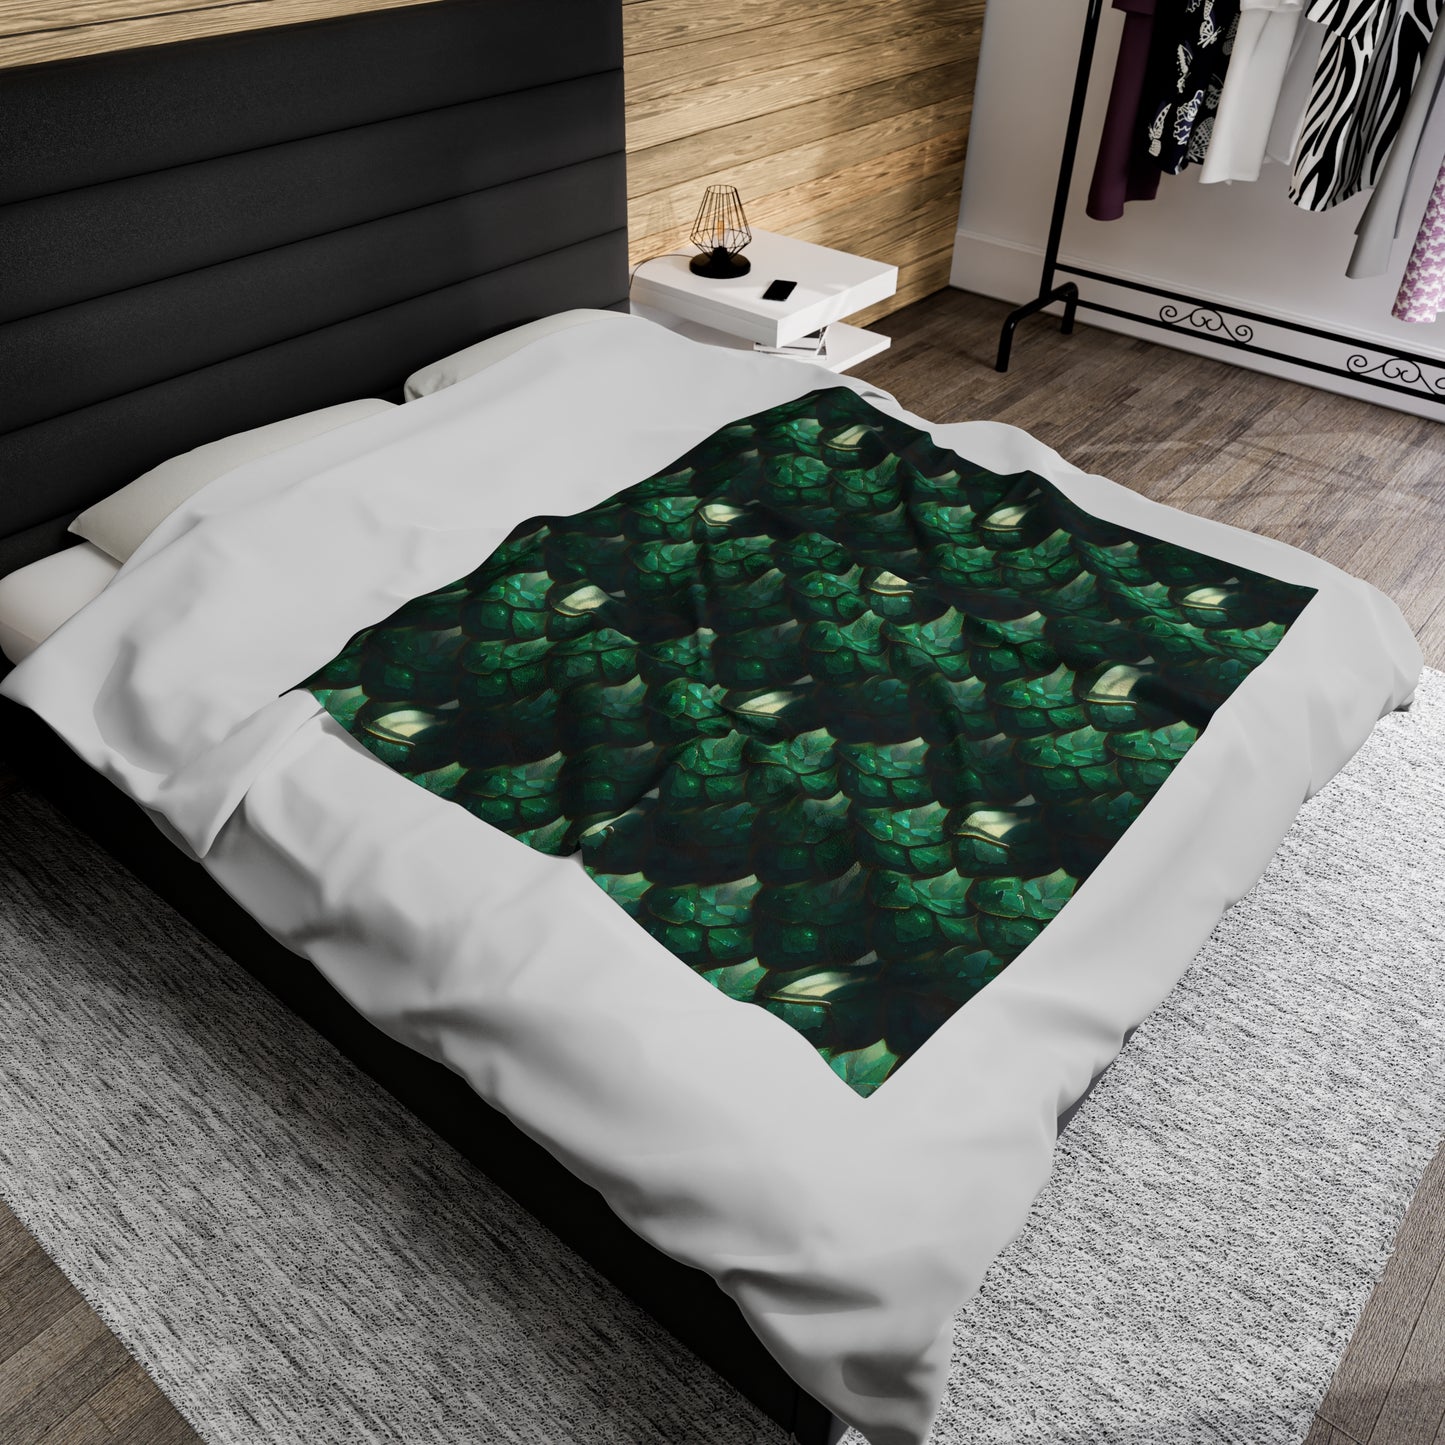 Emerald Scale Velveteen Plush Blanket